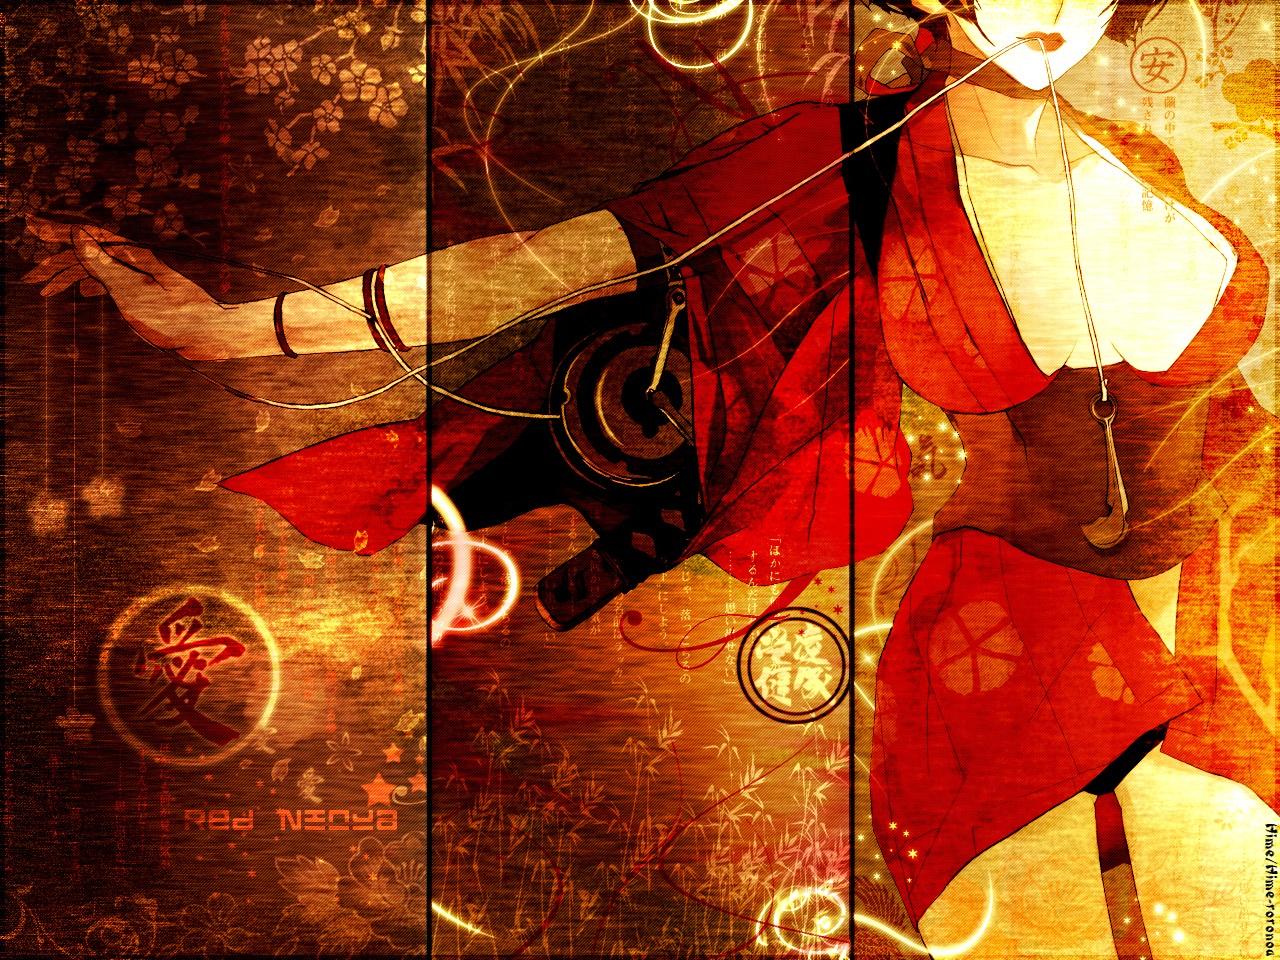 1280 x 960 · jpeg - Download Red Ninja Wallpaper: Red Ninja estampe mode (1280x960) - Minitokyo